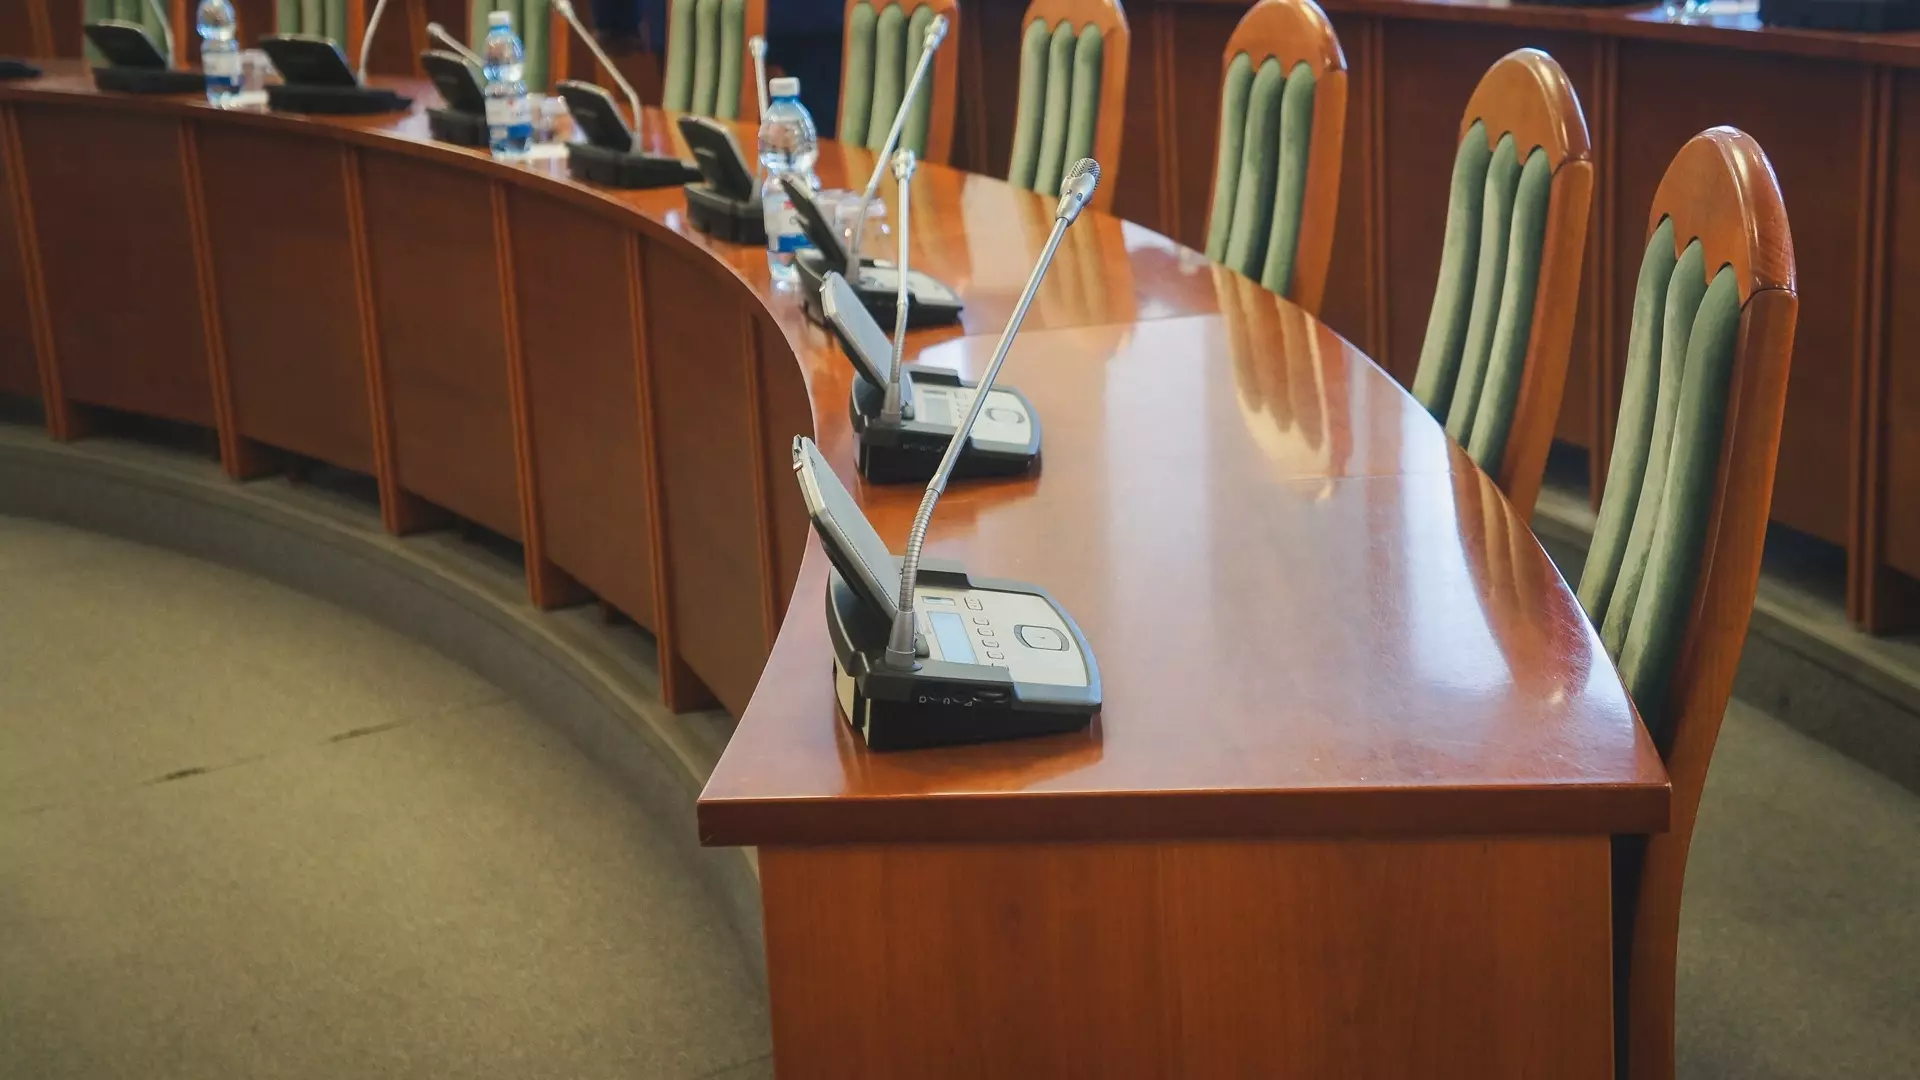 Мэр Сургута внезапно уволился, а депутаты оправдываются: итоги дня в ХМАО